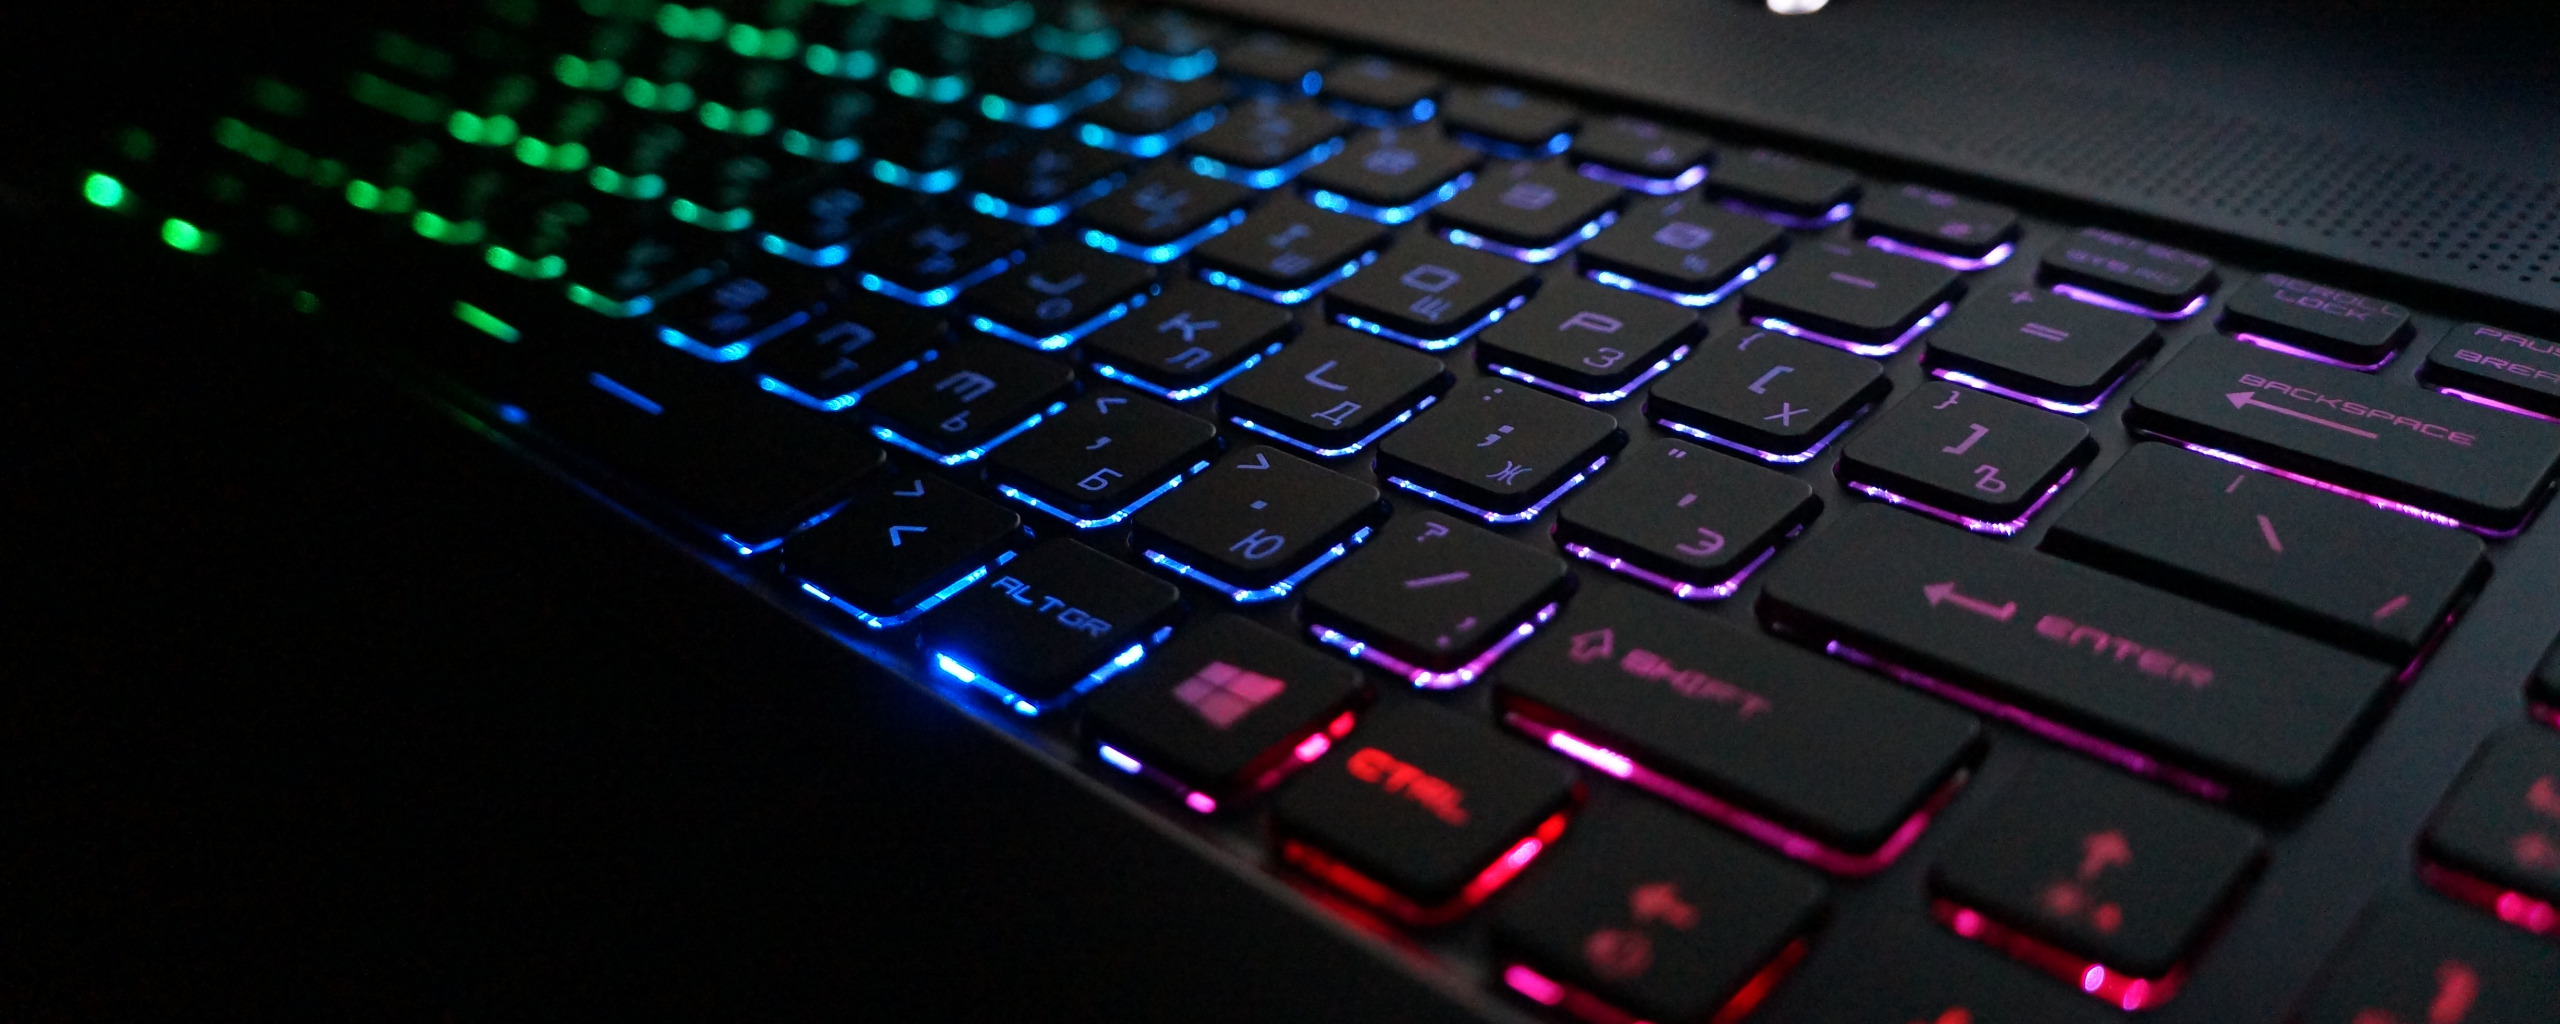 Включить подсветку 10. Клавиатура с подсветкой. Светящаяся клавиатура для ноутбука. Ноутбук с подсветкой клавиатуры. Мультимедийная клавиатура с подсветкой.